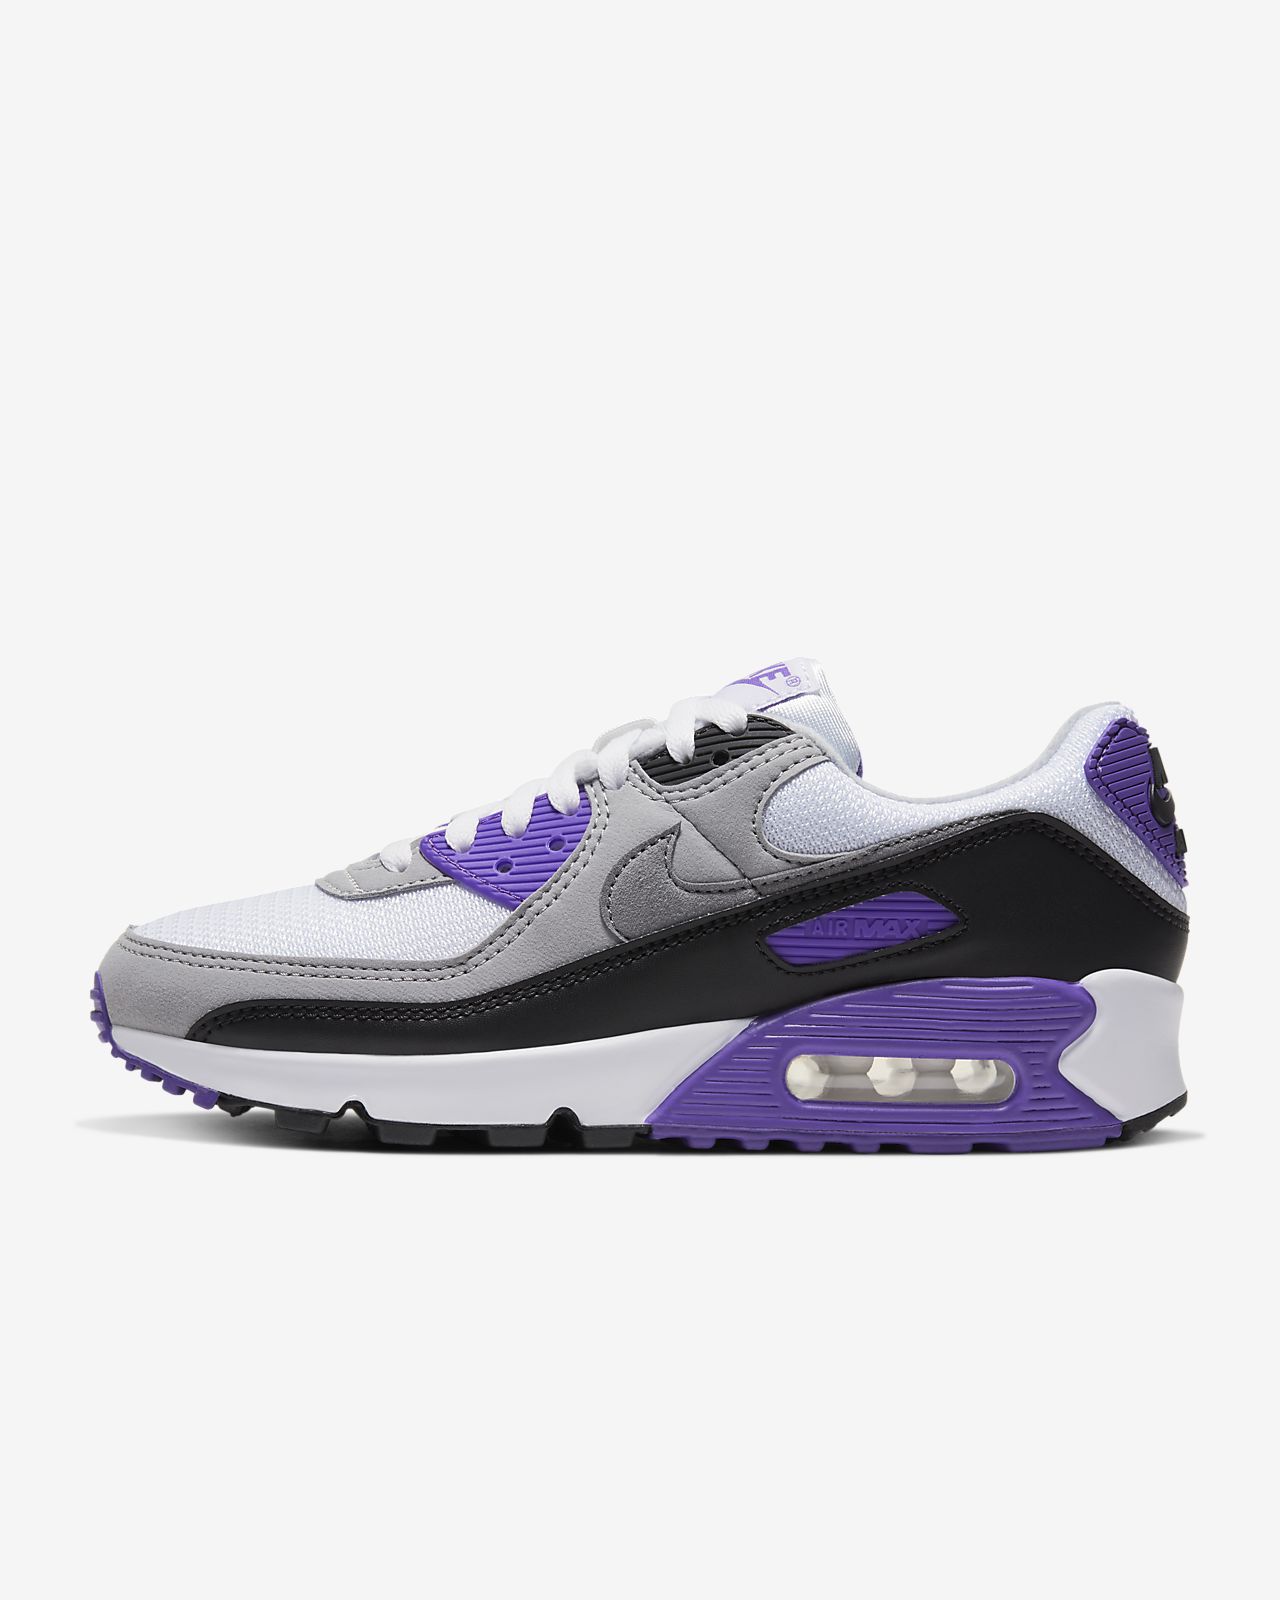 nike air max 90s purple